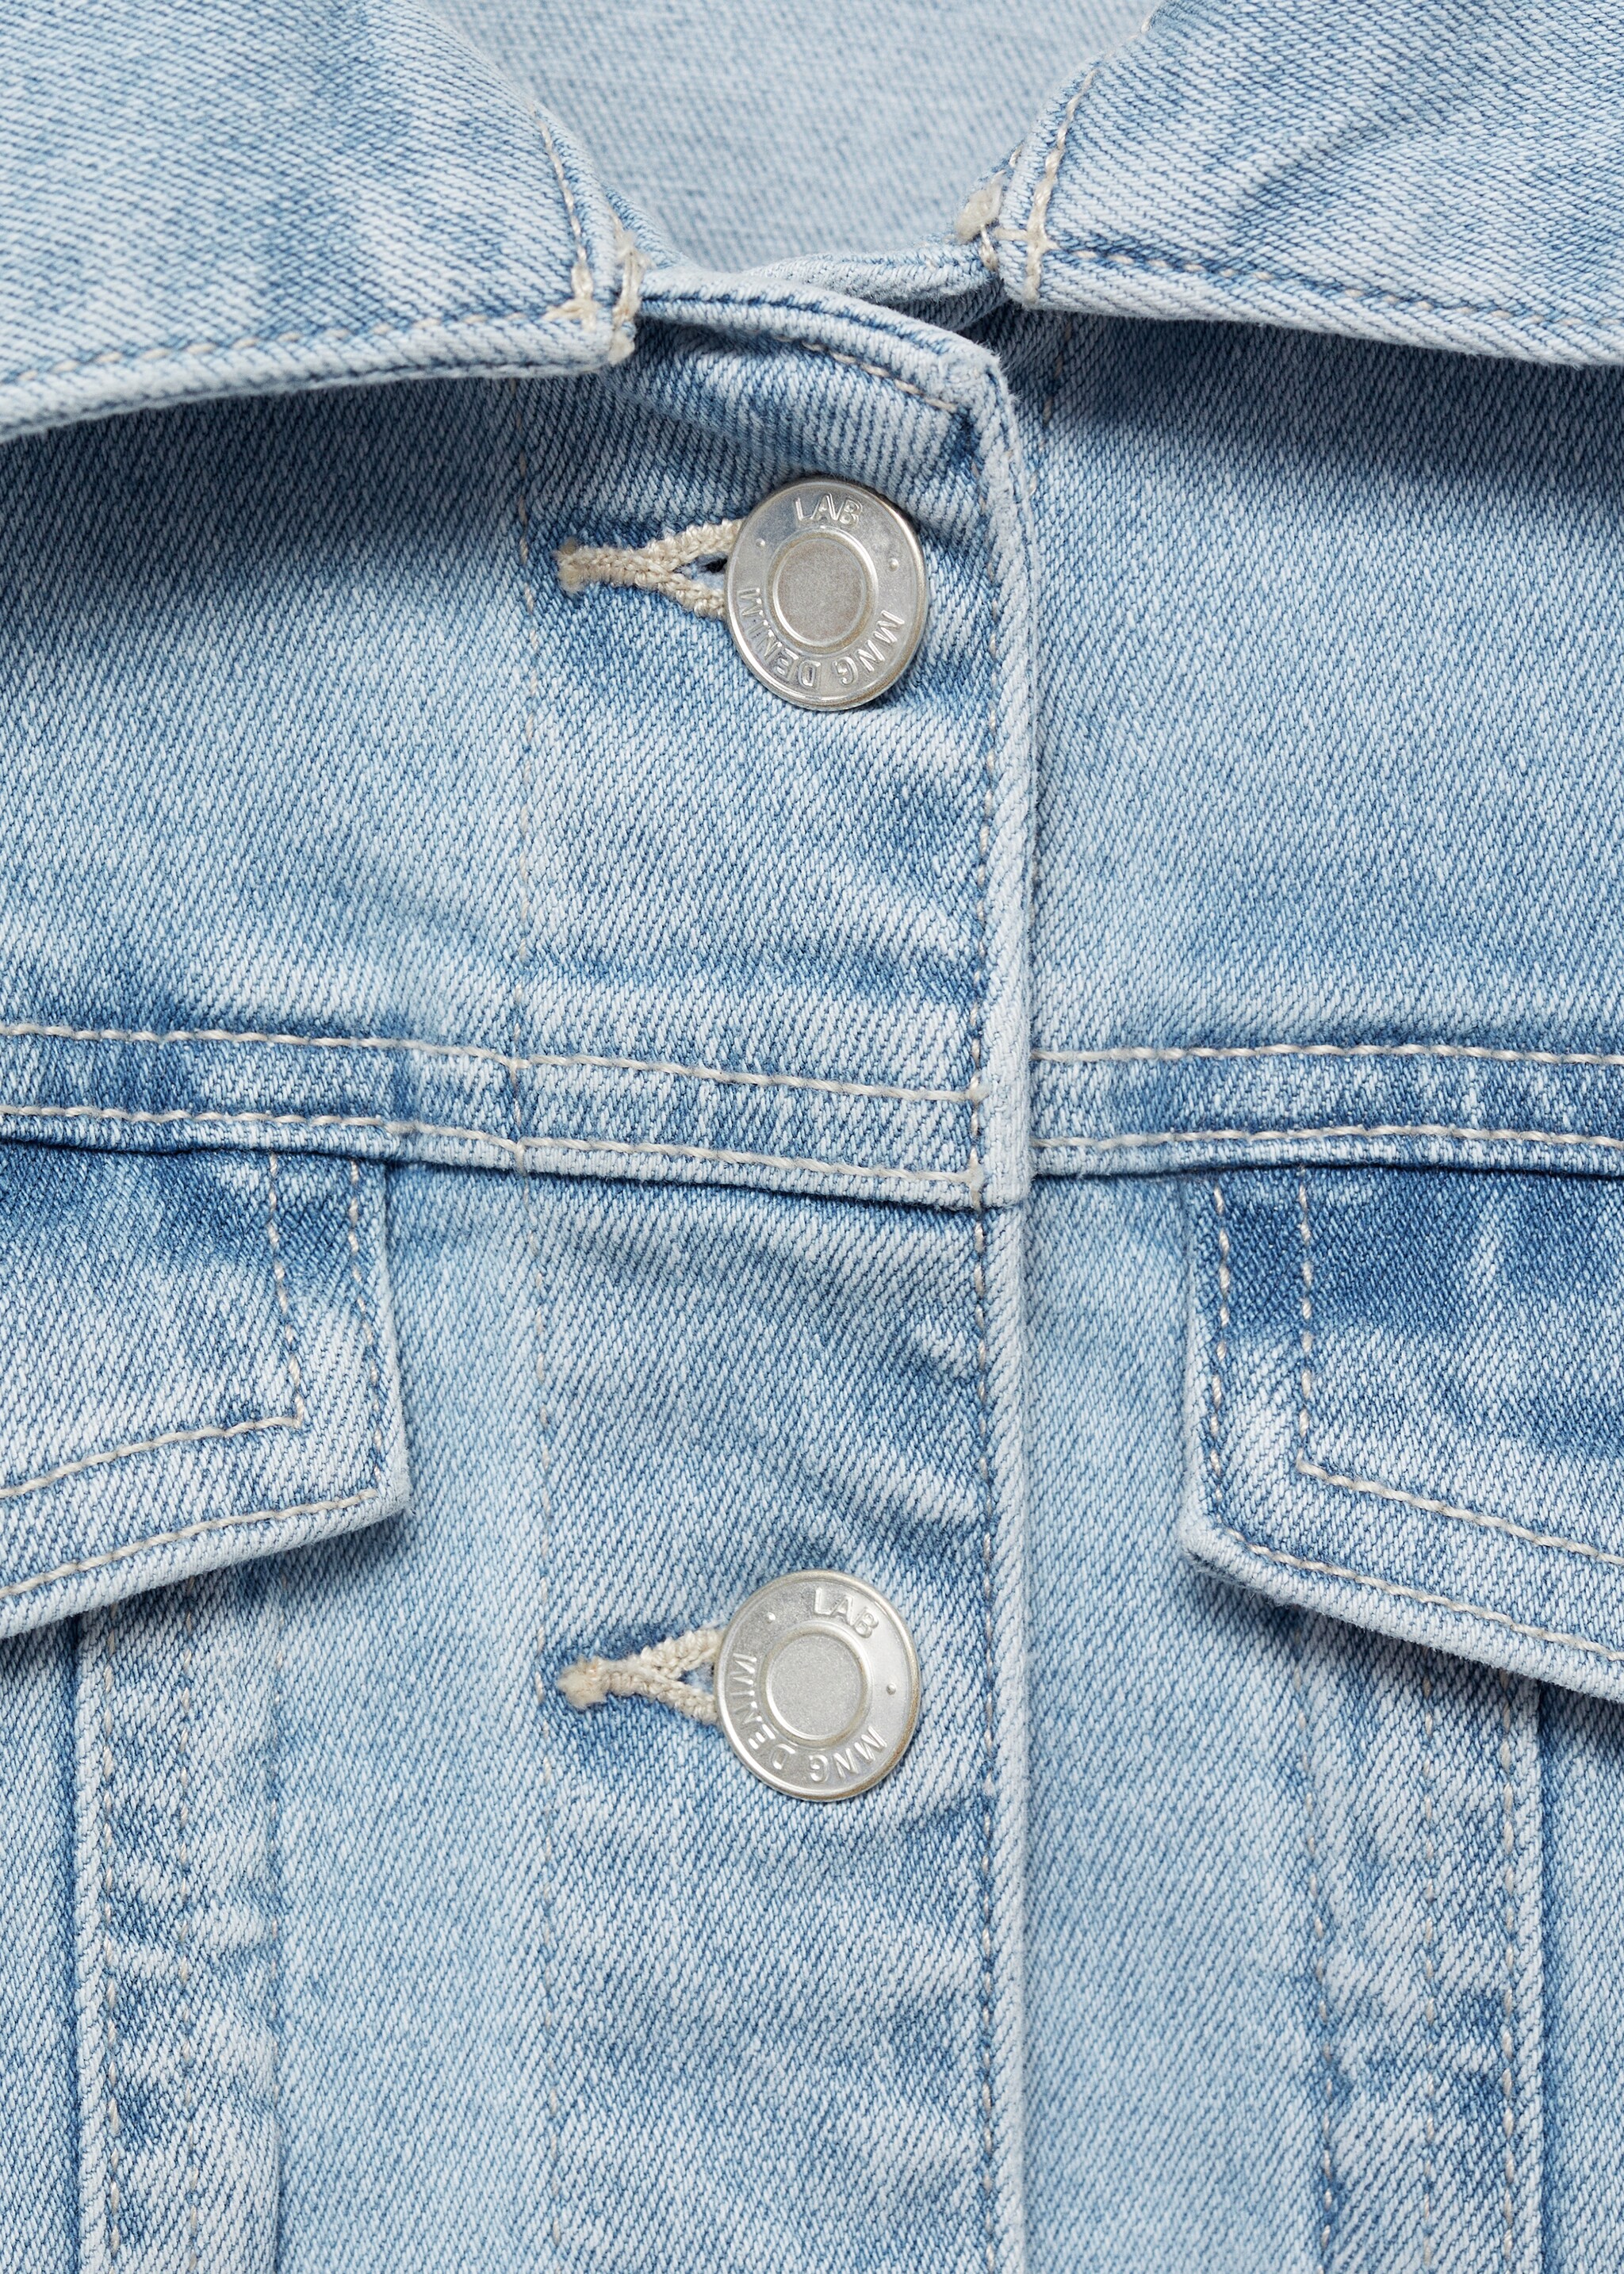 Blouson jean poches - Détail de l'article 8